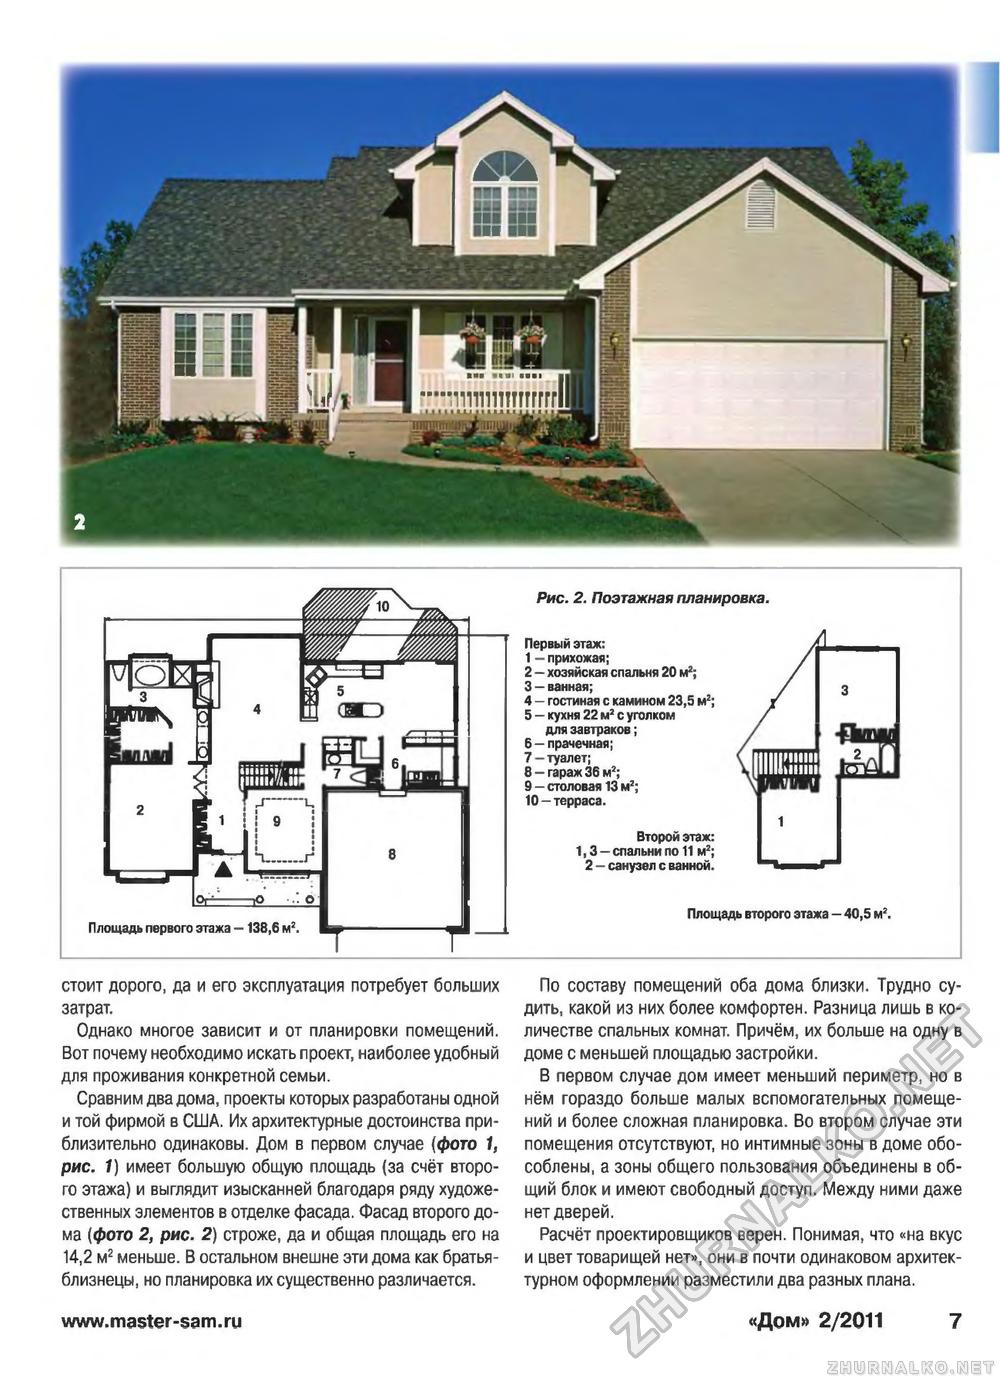 Дом 2011-02, страница 7